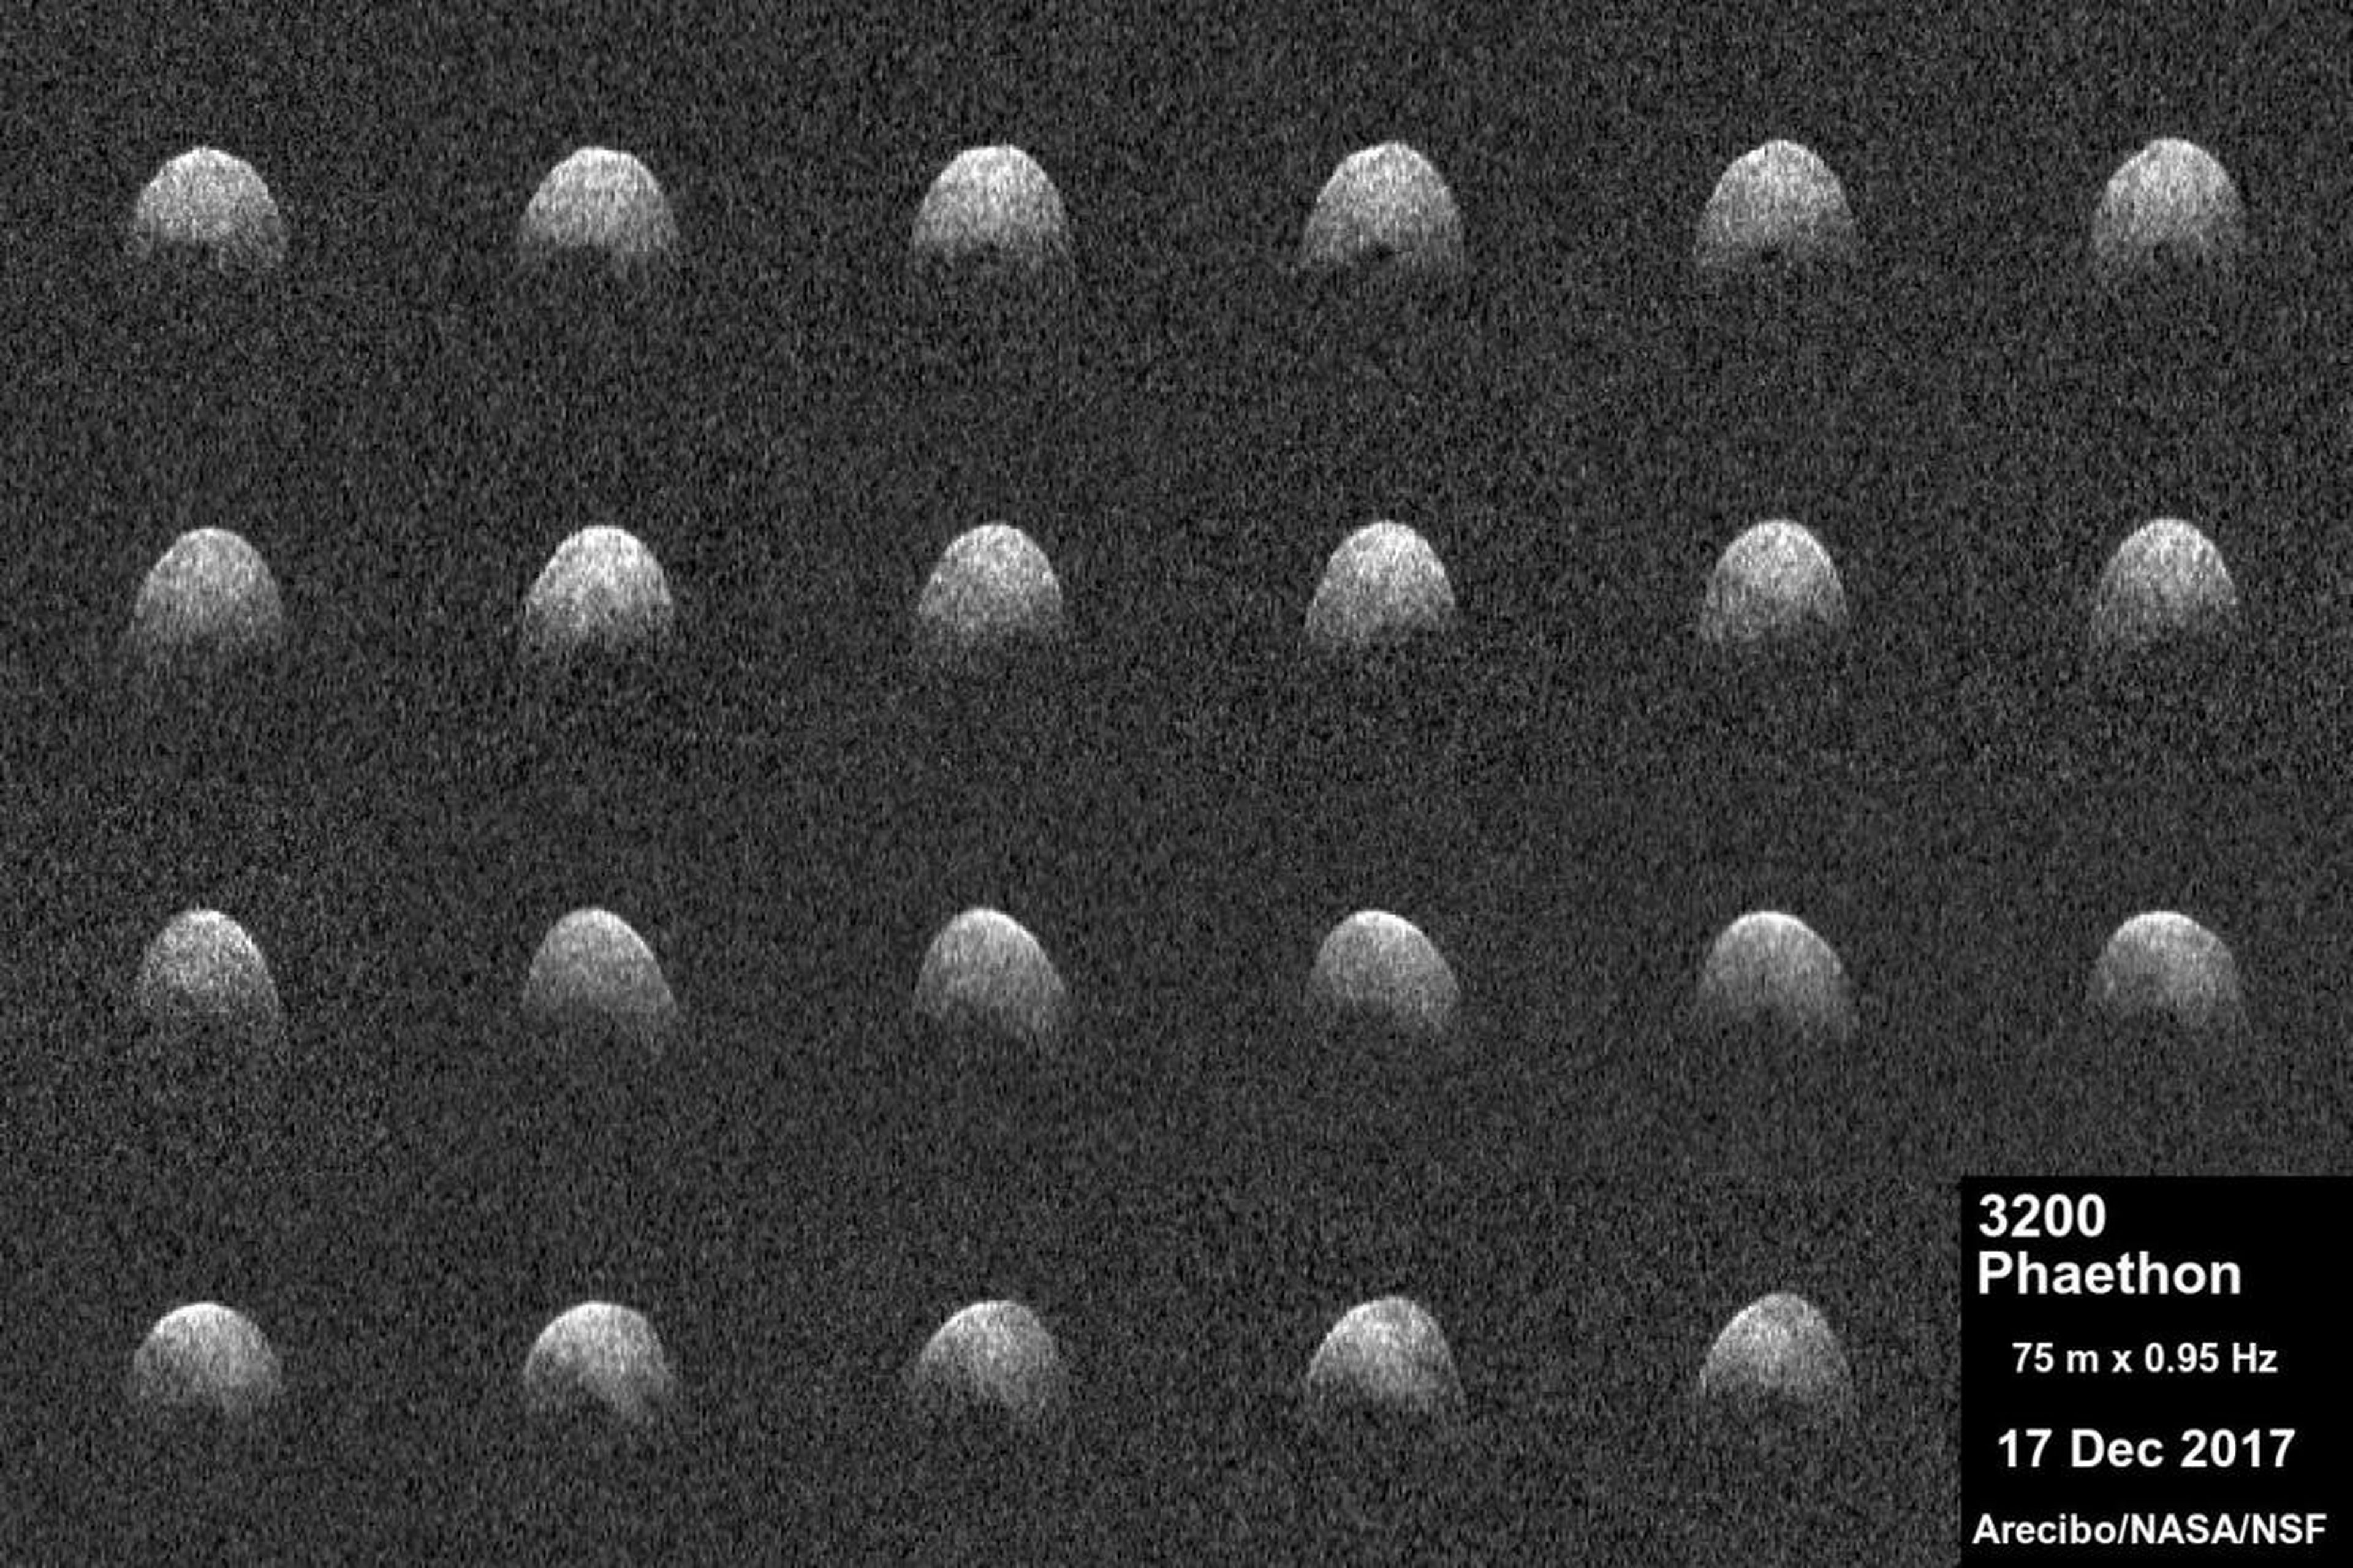 Imágenes del asteroide Phaeton 3200 tomadas por el Observatorio de Arecibo de la National Science Foundation.